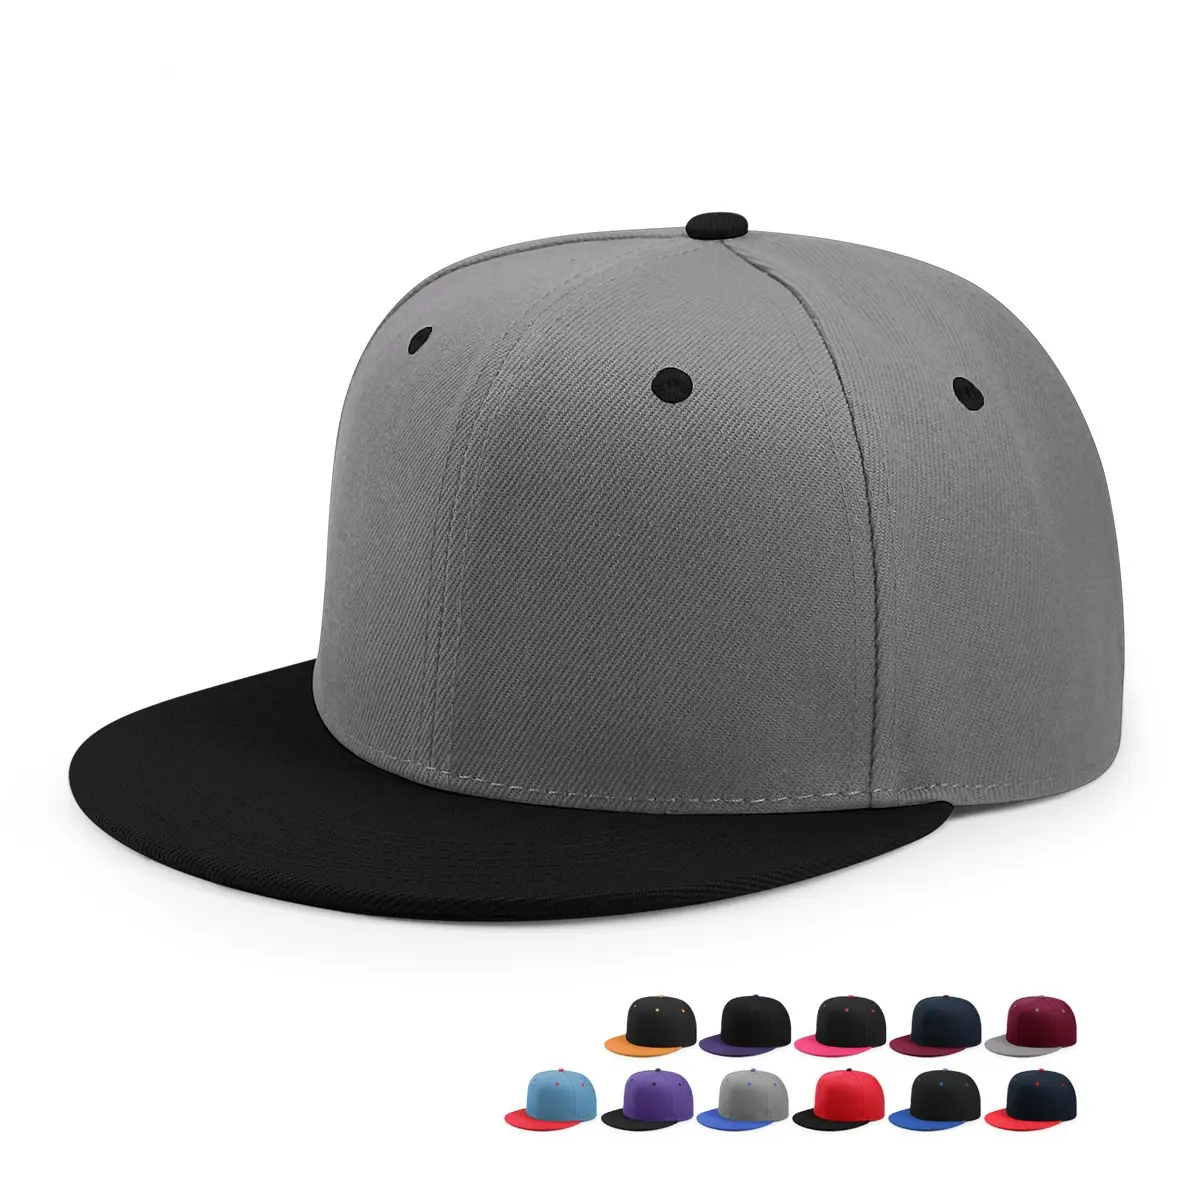 최고의 판매 도매 힙합 일반 스포츠 야구 모자 스냅 백 빈 snapback 모자 남성 여성